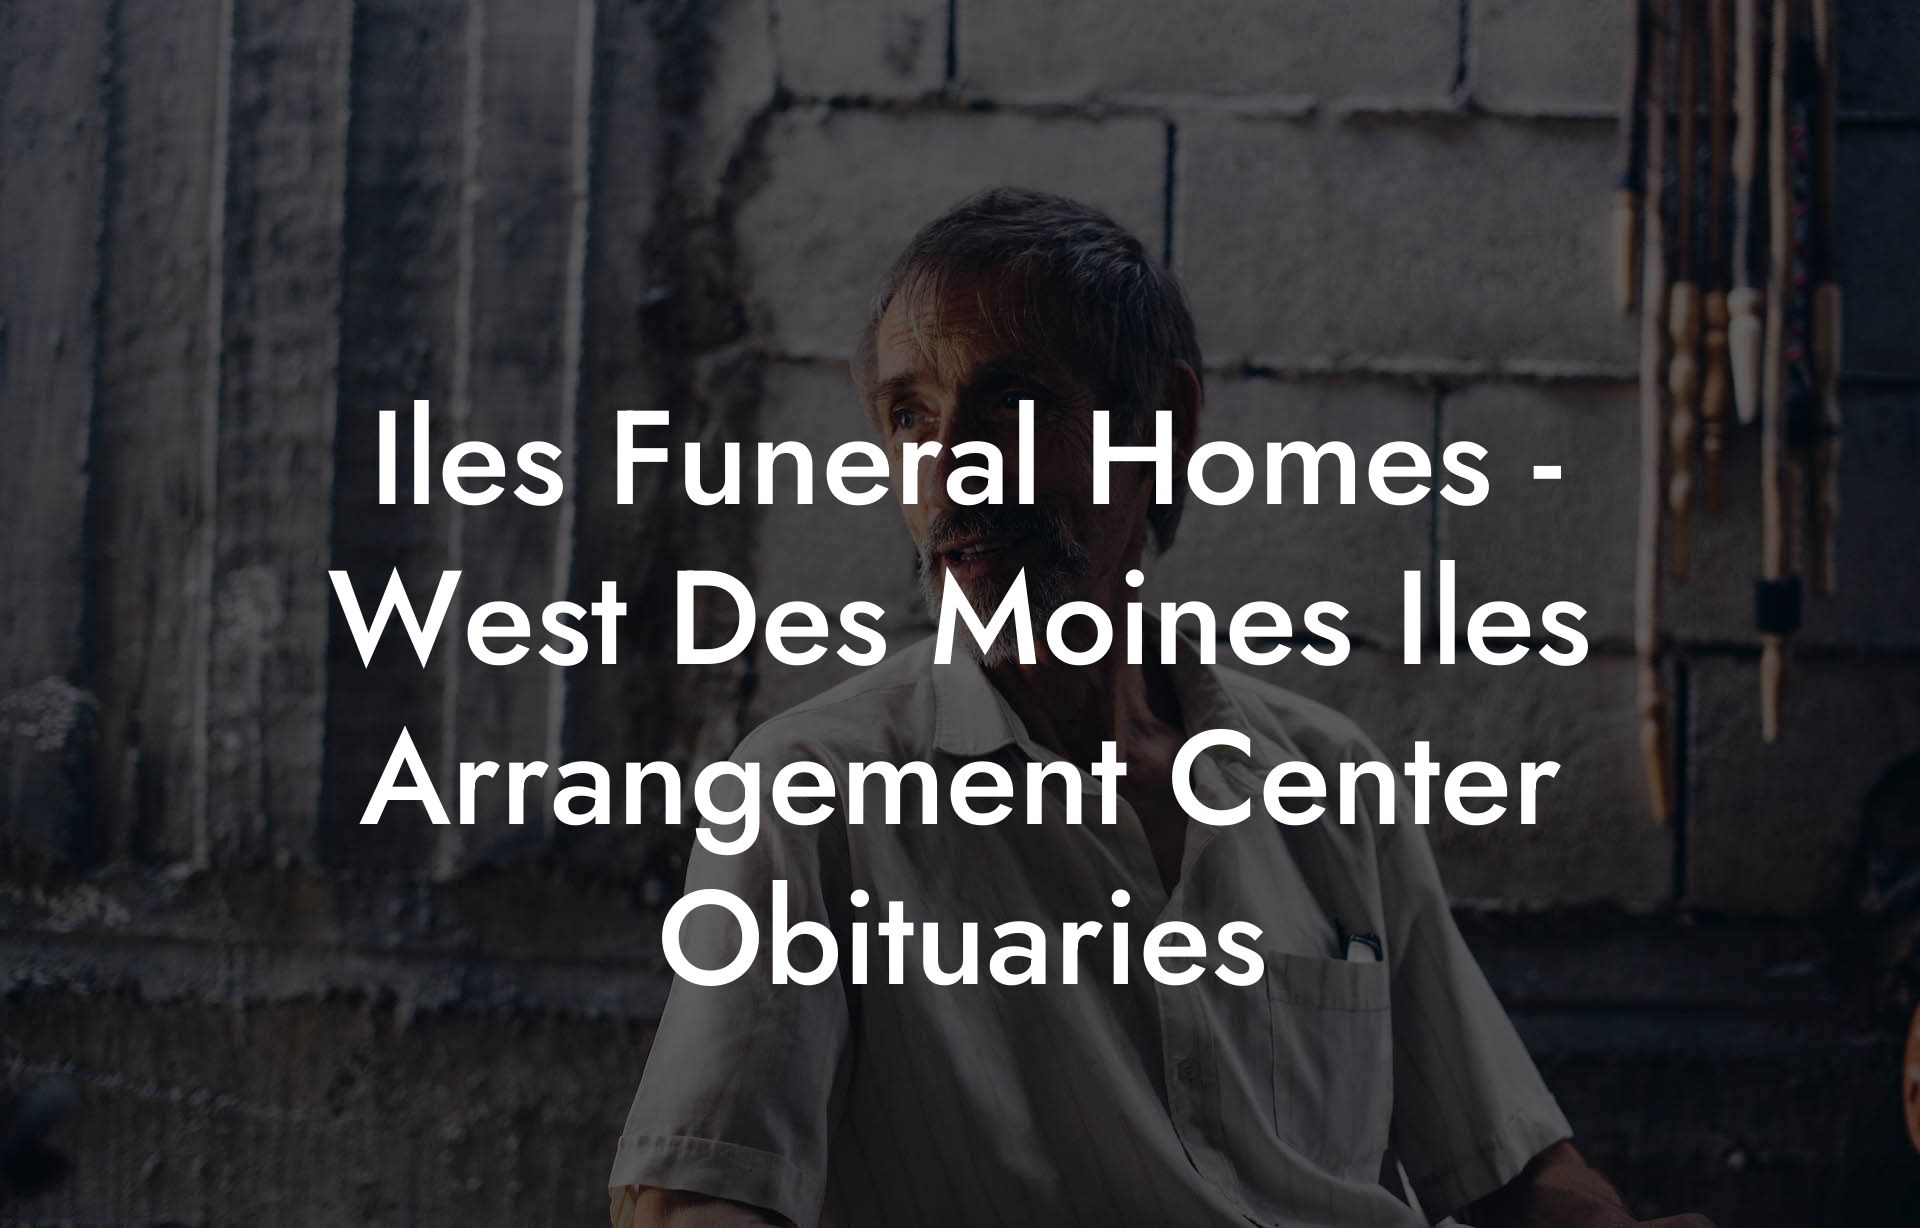 Iles Funeral Homes - West Des Moines Iles Arrangement Center Obituaries